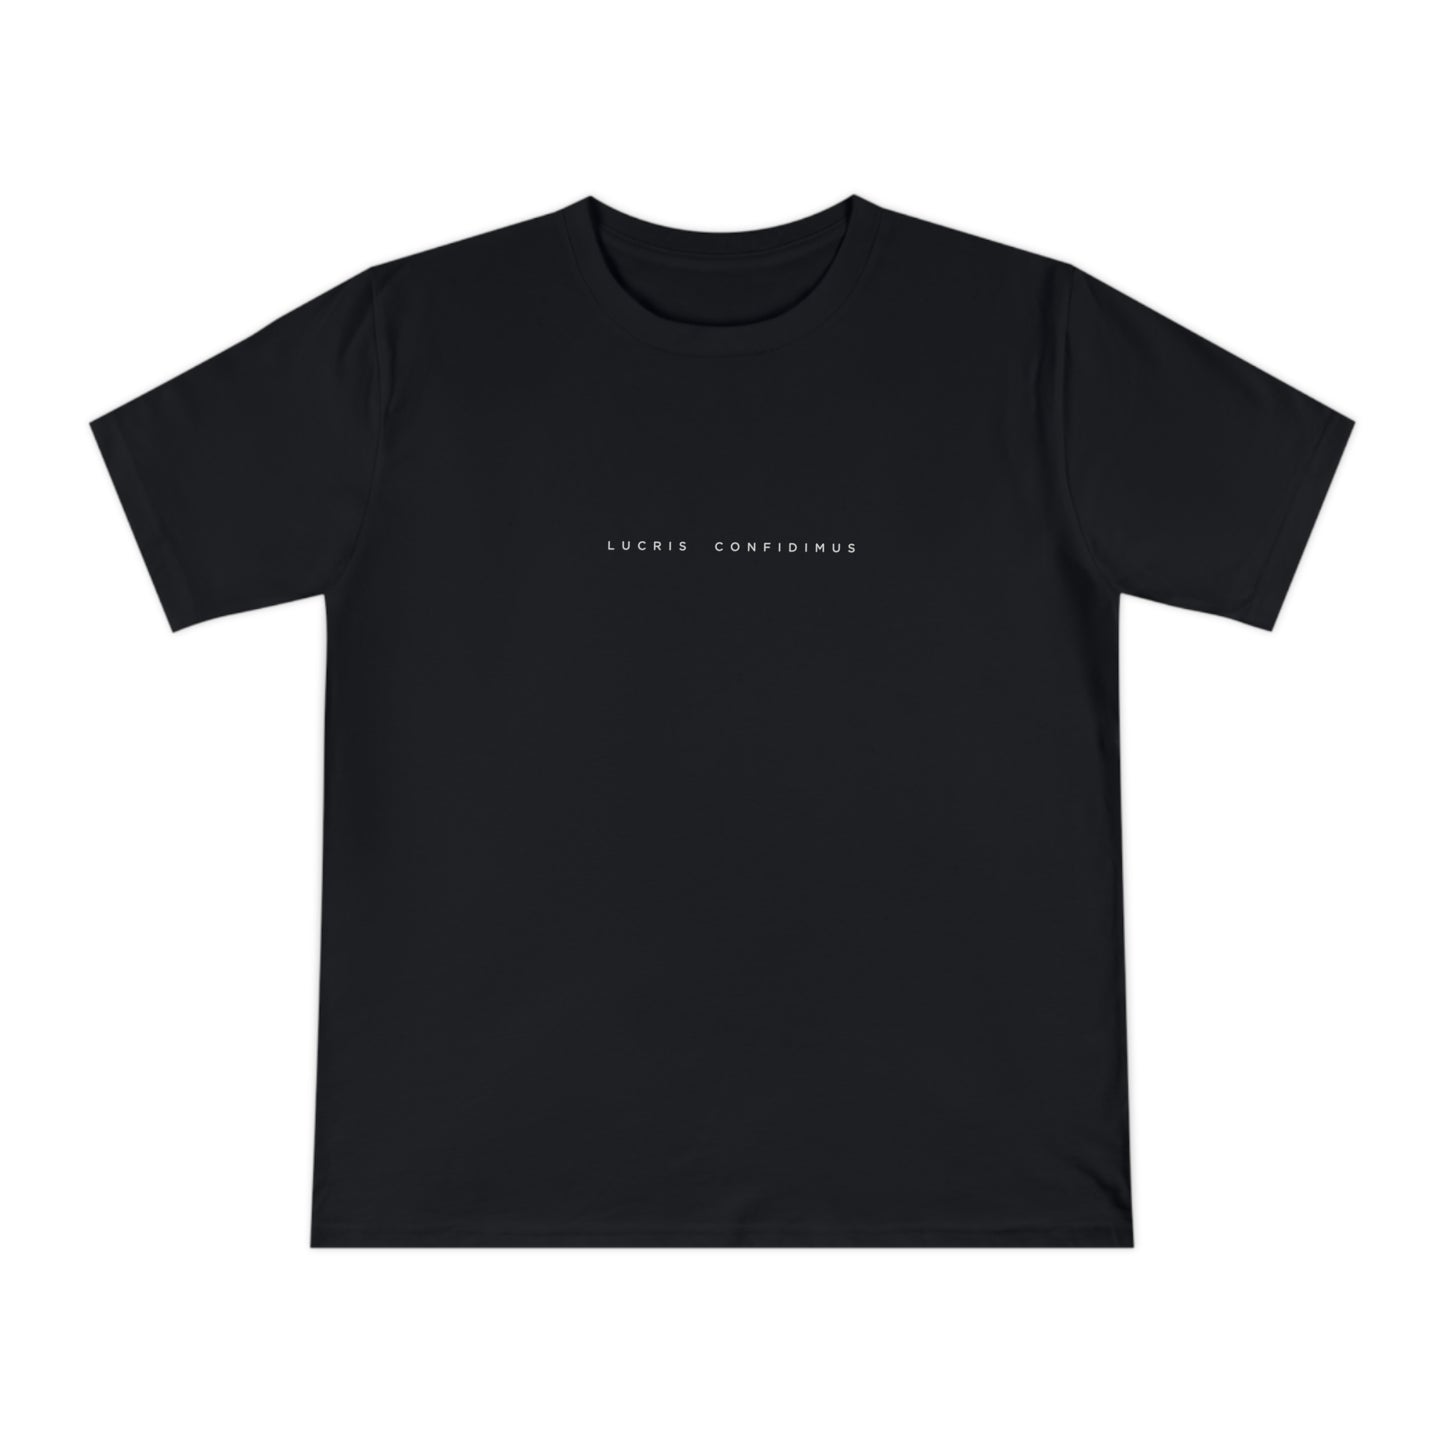 Lucris Confidimus Unisex T-Shirt